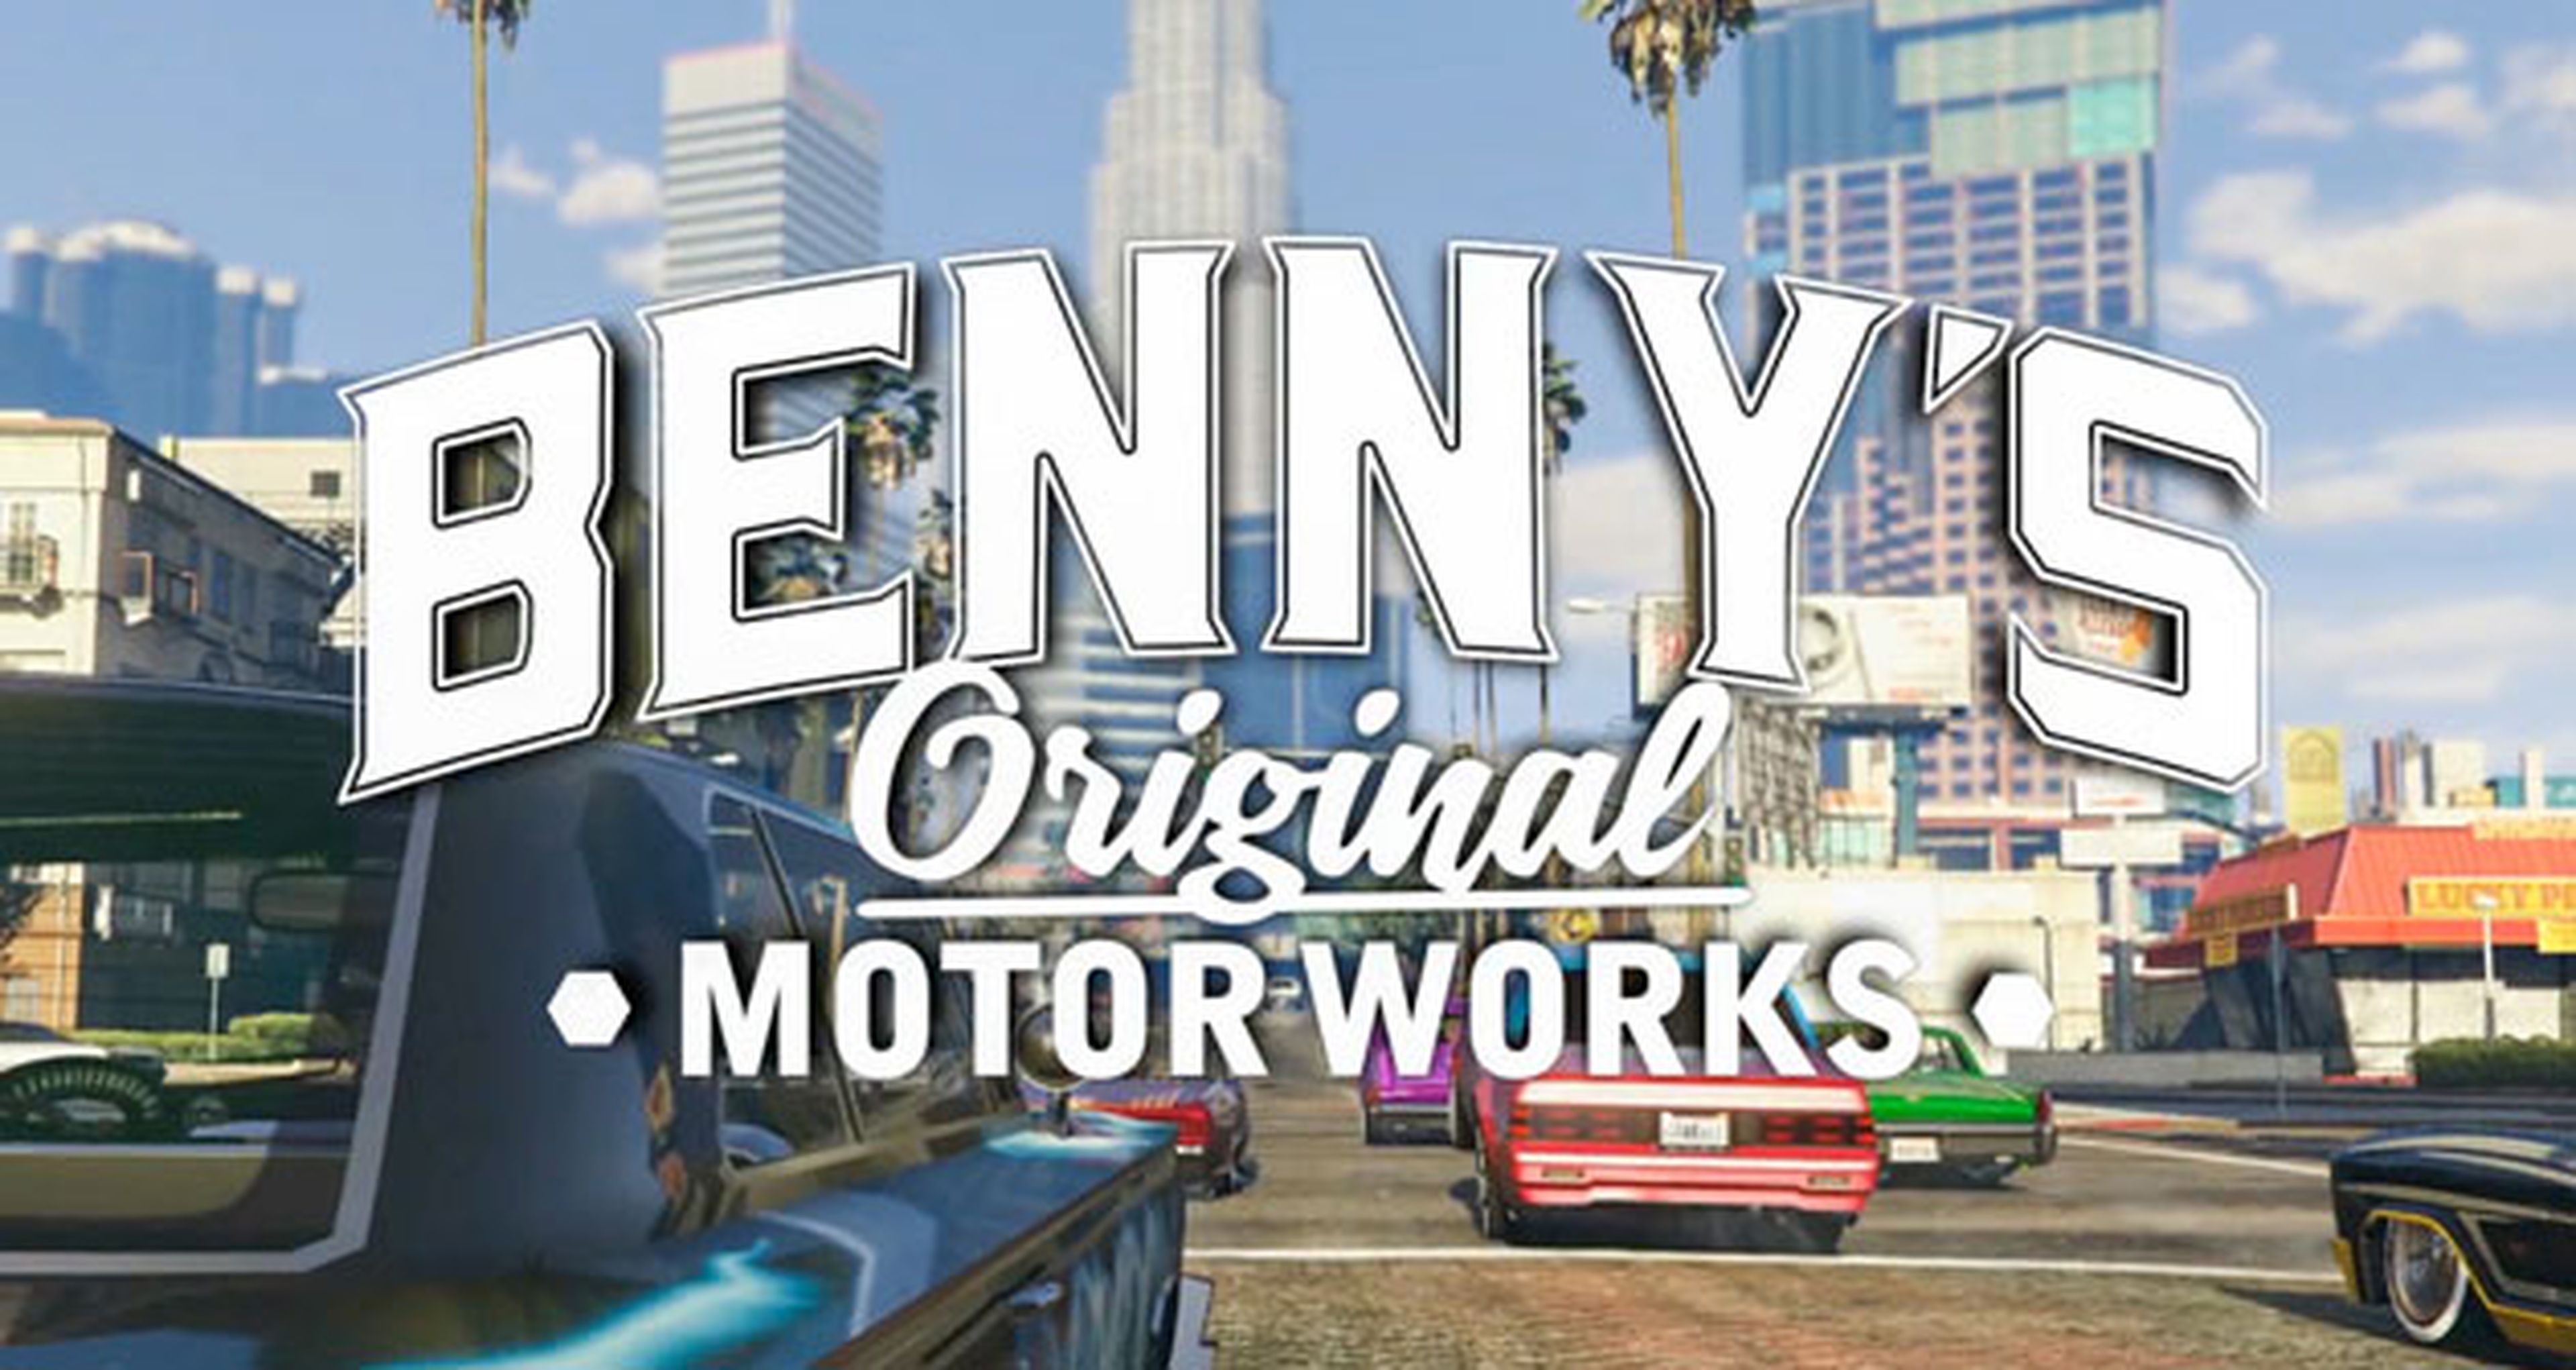 GTA Online: Lowriders, tráiler con el taller Benny's Original Motor Works